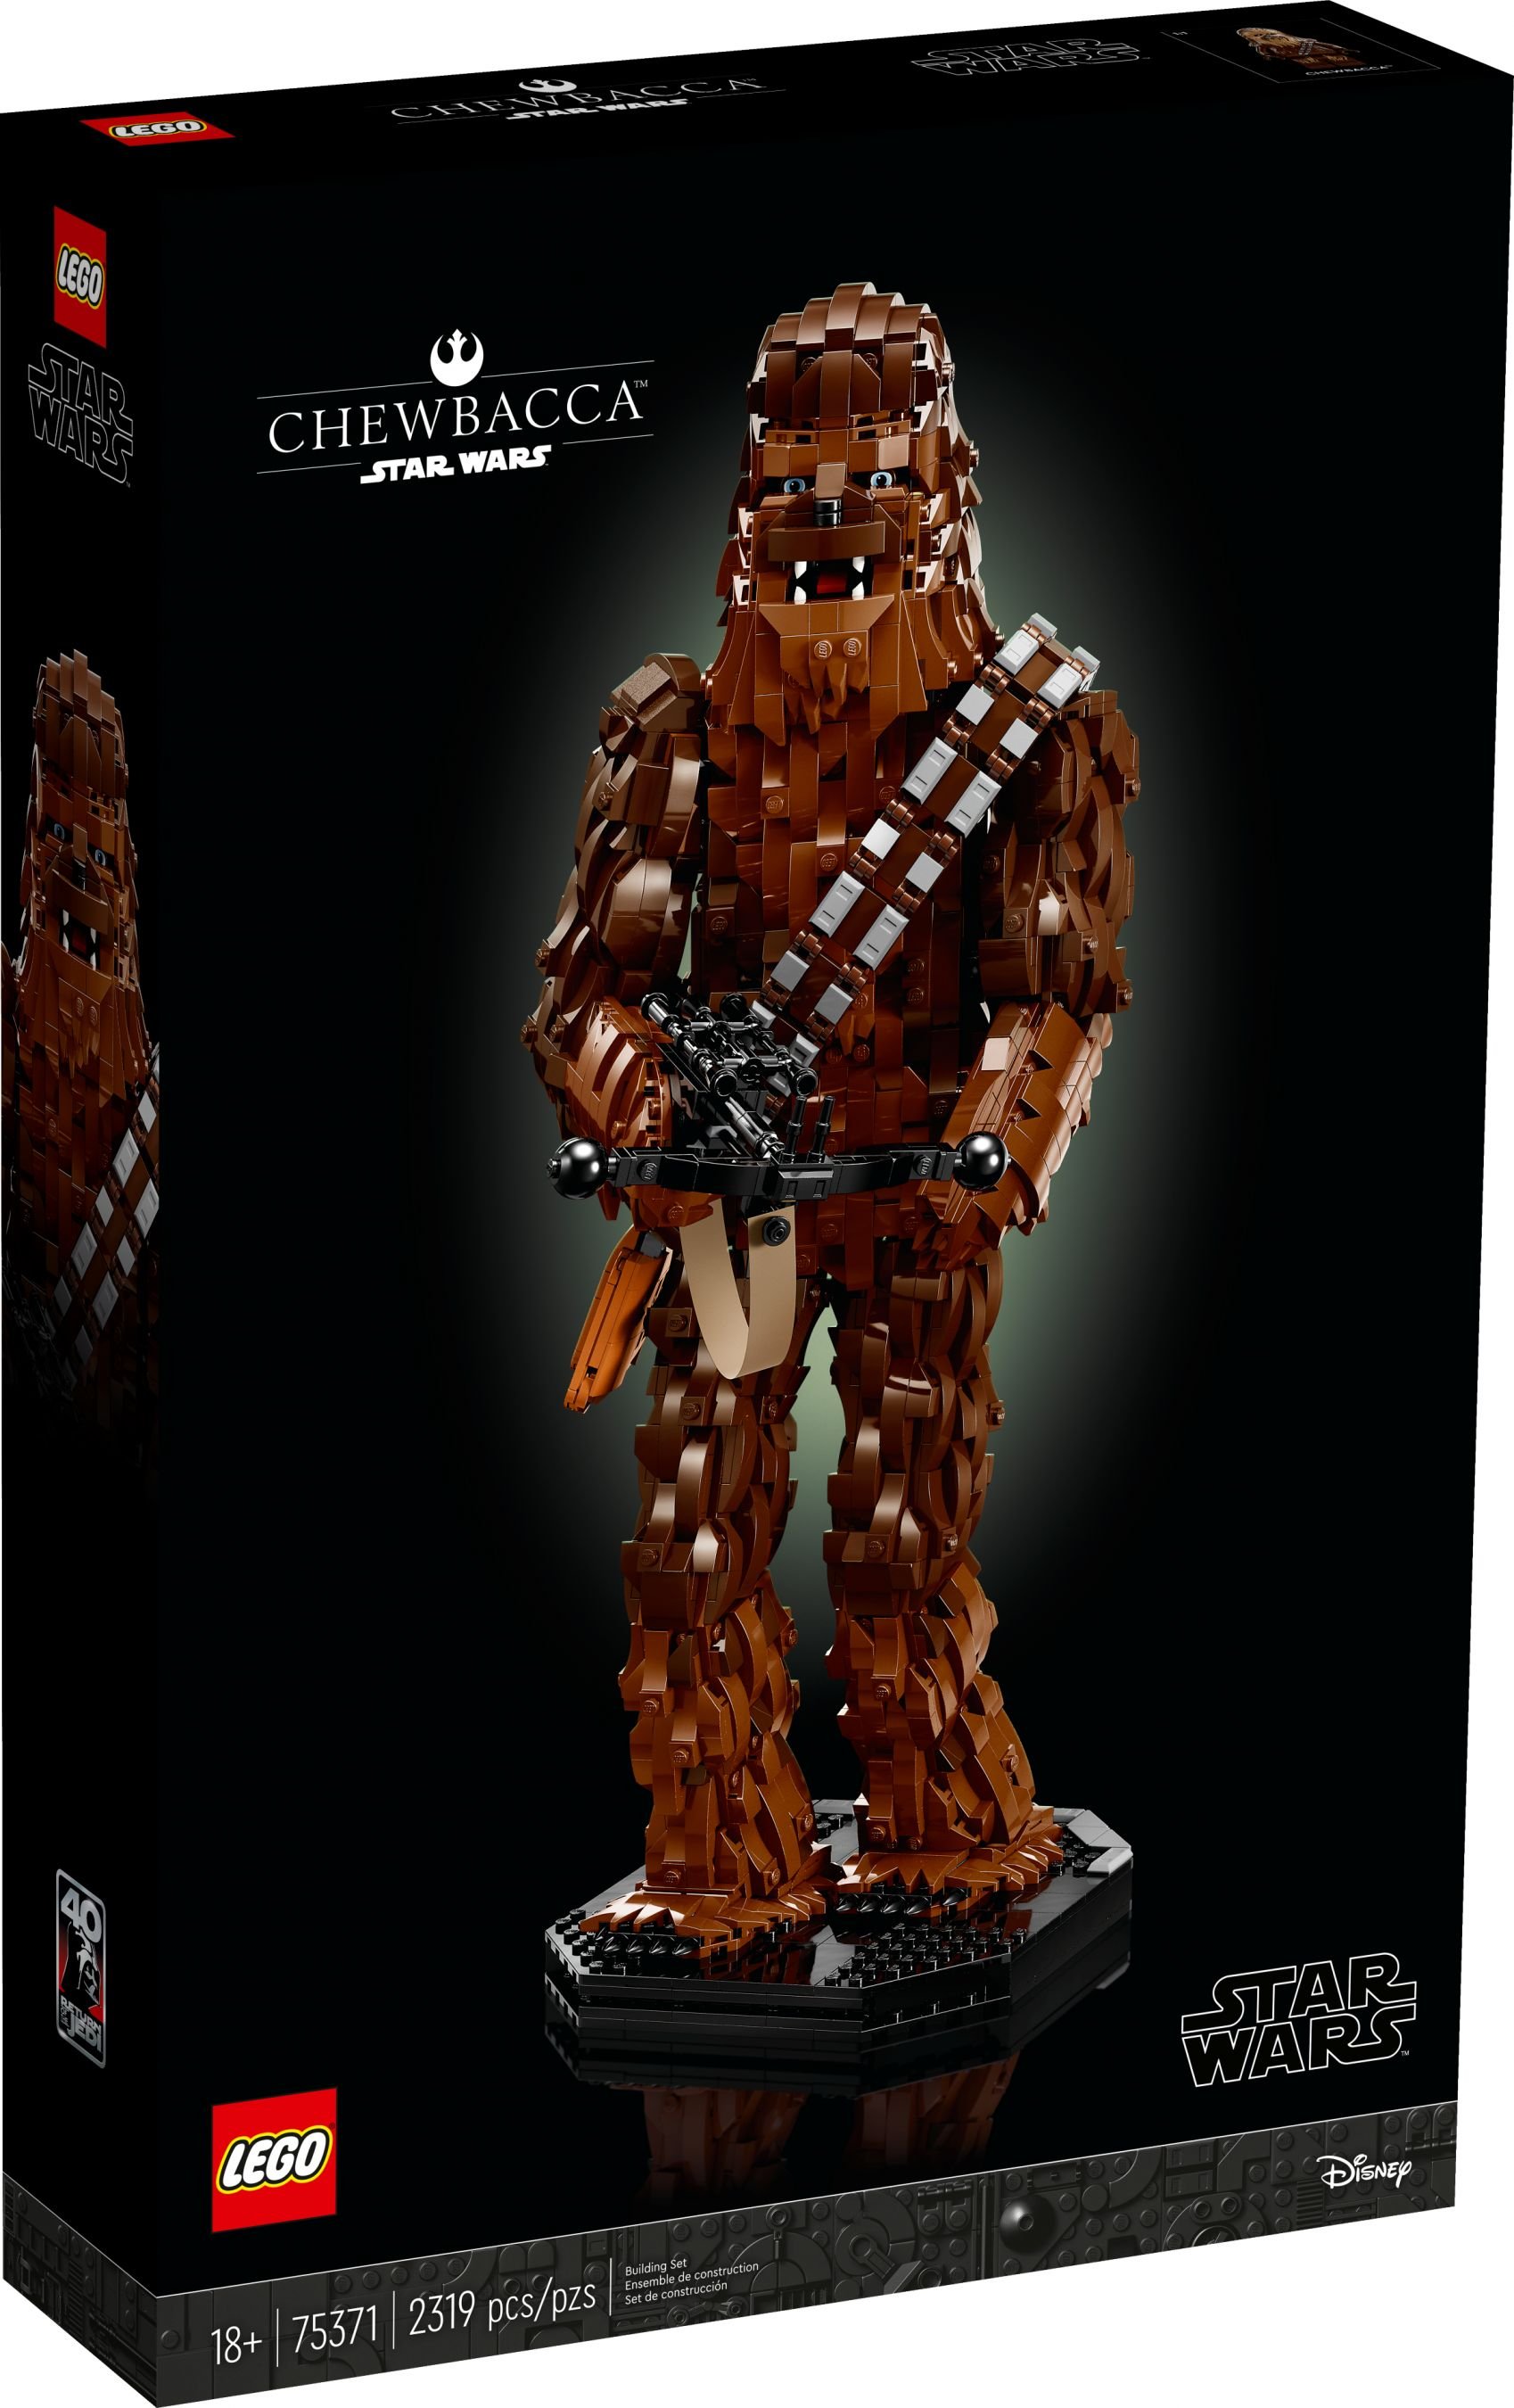 LEGO Star Wars 75371 Chewbacca LEGO_75371_alt1.jpg